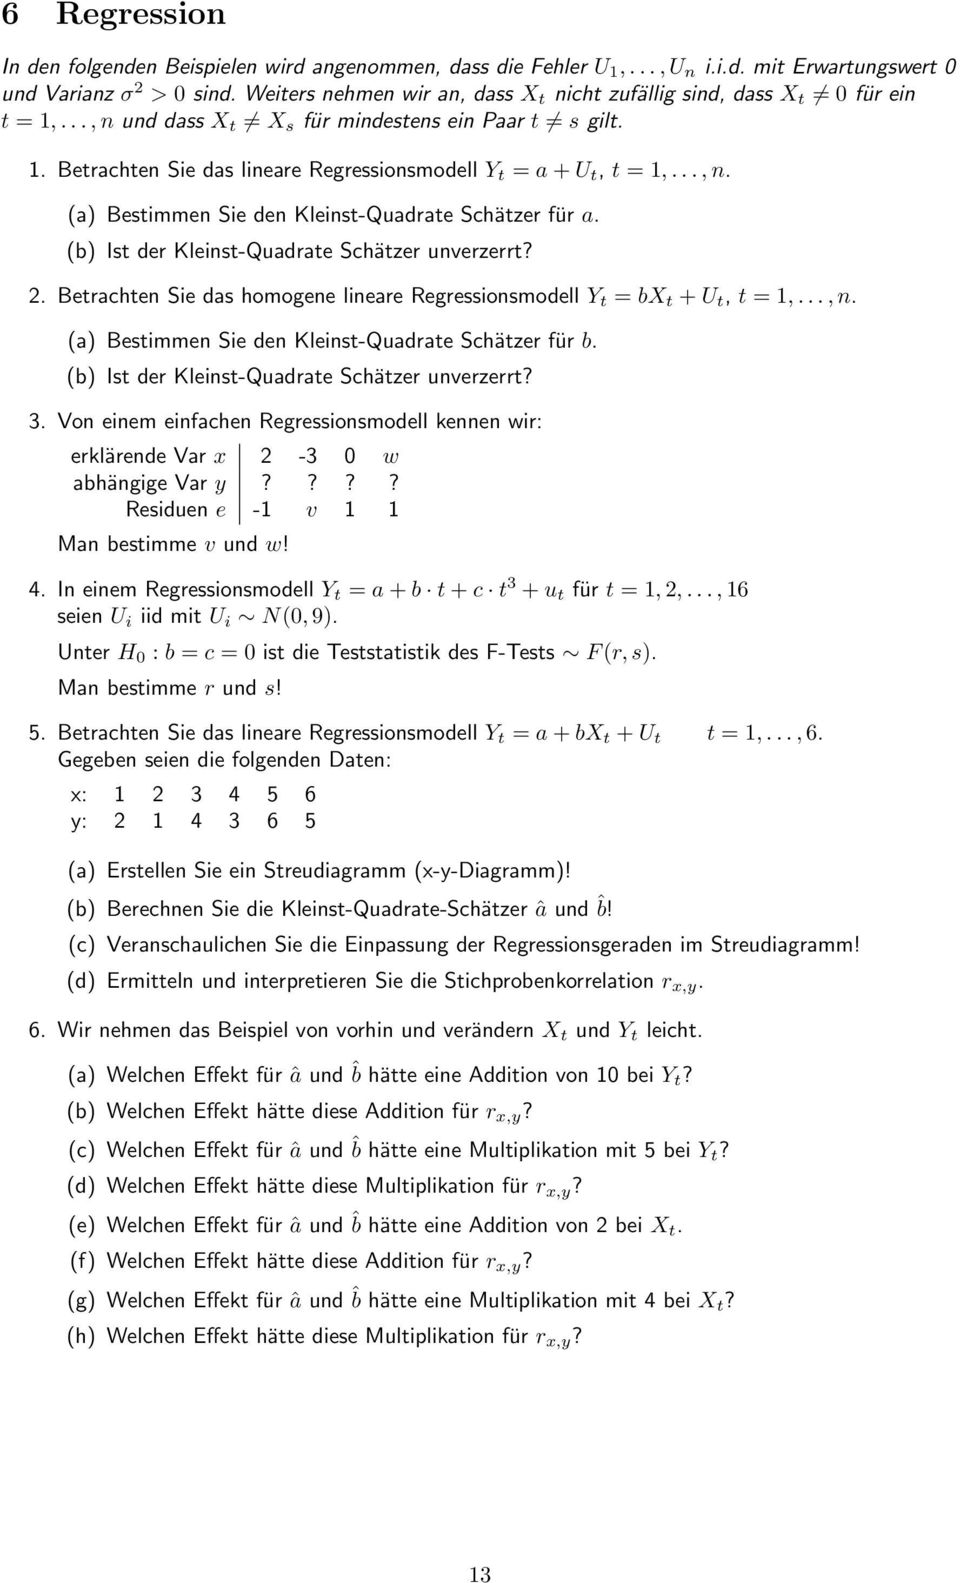 .., n. (a) Bestimmen Sie den Kleinst-Quadrate Schätzer für a. (b) Ist der Kleinst-Quadrate Schätzer unverzerrt? 2. Betrachten Sie das homogene lineare Regressionsmodell Y t = bx t + U t, t = 1,..., n. (a) Bestimmen Sie den Kleinst-Quadrate Schätzer für b.